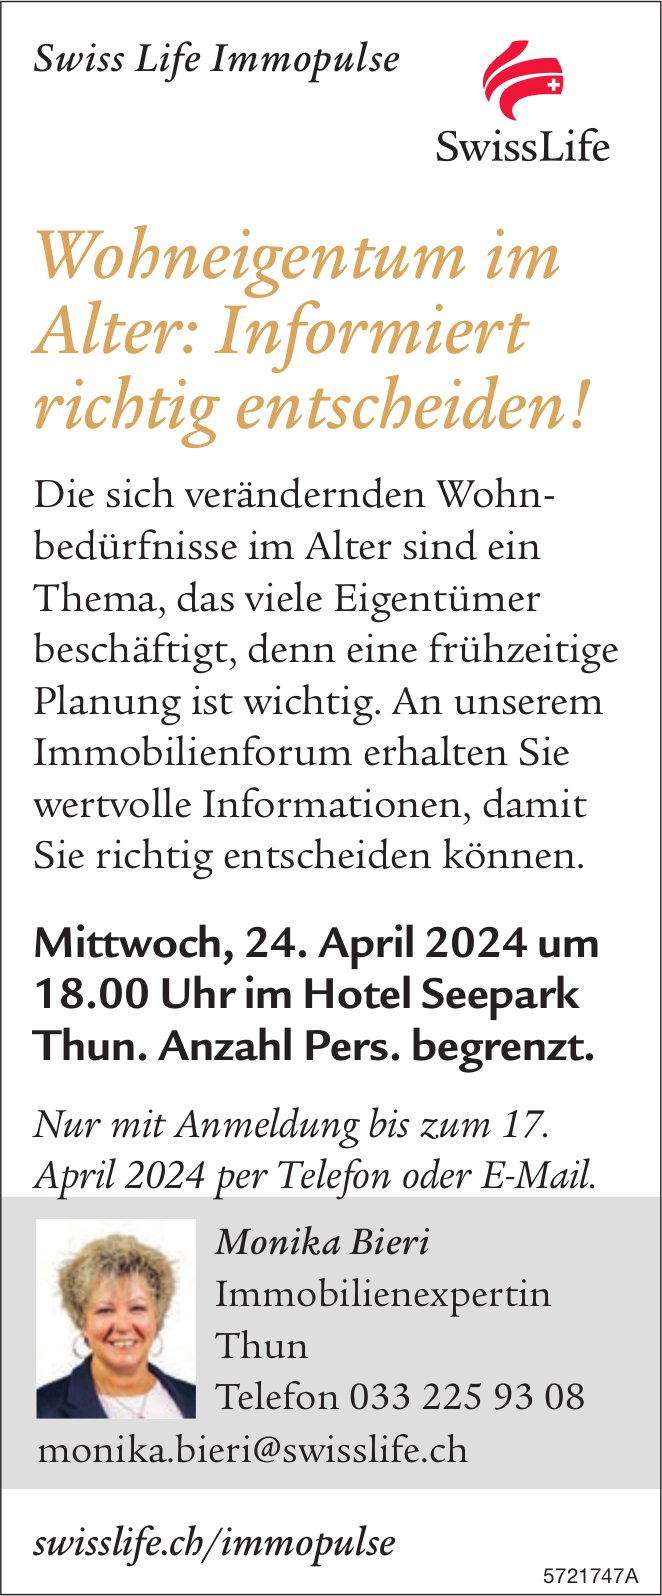 Wohneigentum im Alter: Informiert richtig entscheiden!, 24. April, Hotel Seepark, Thun